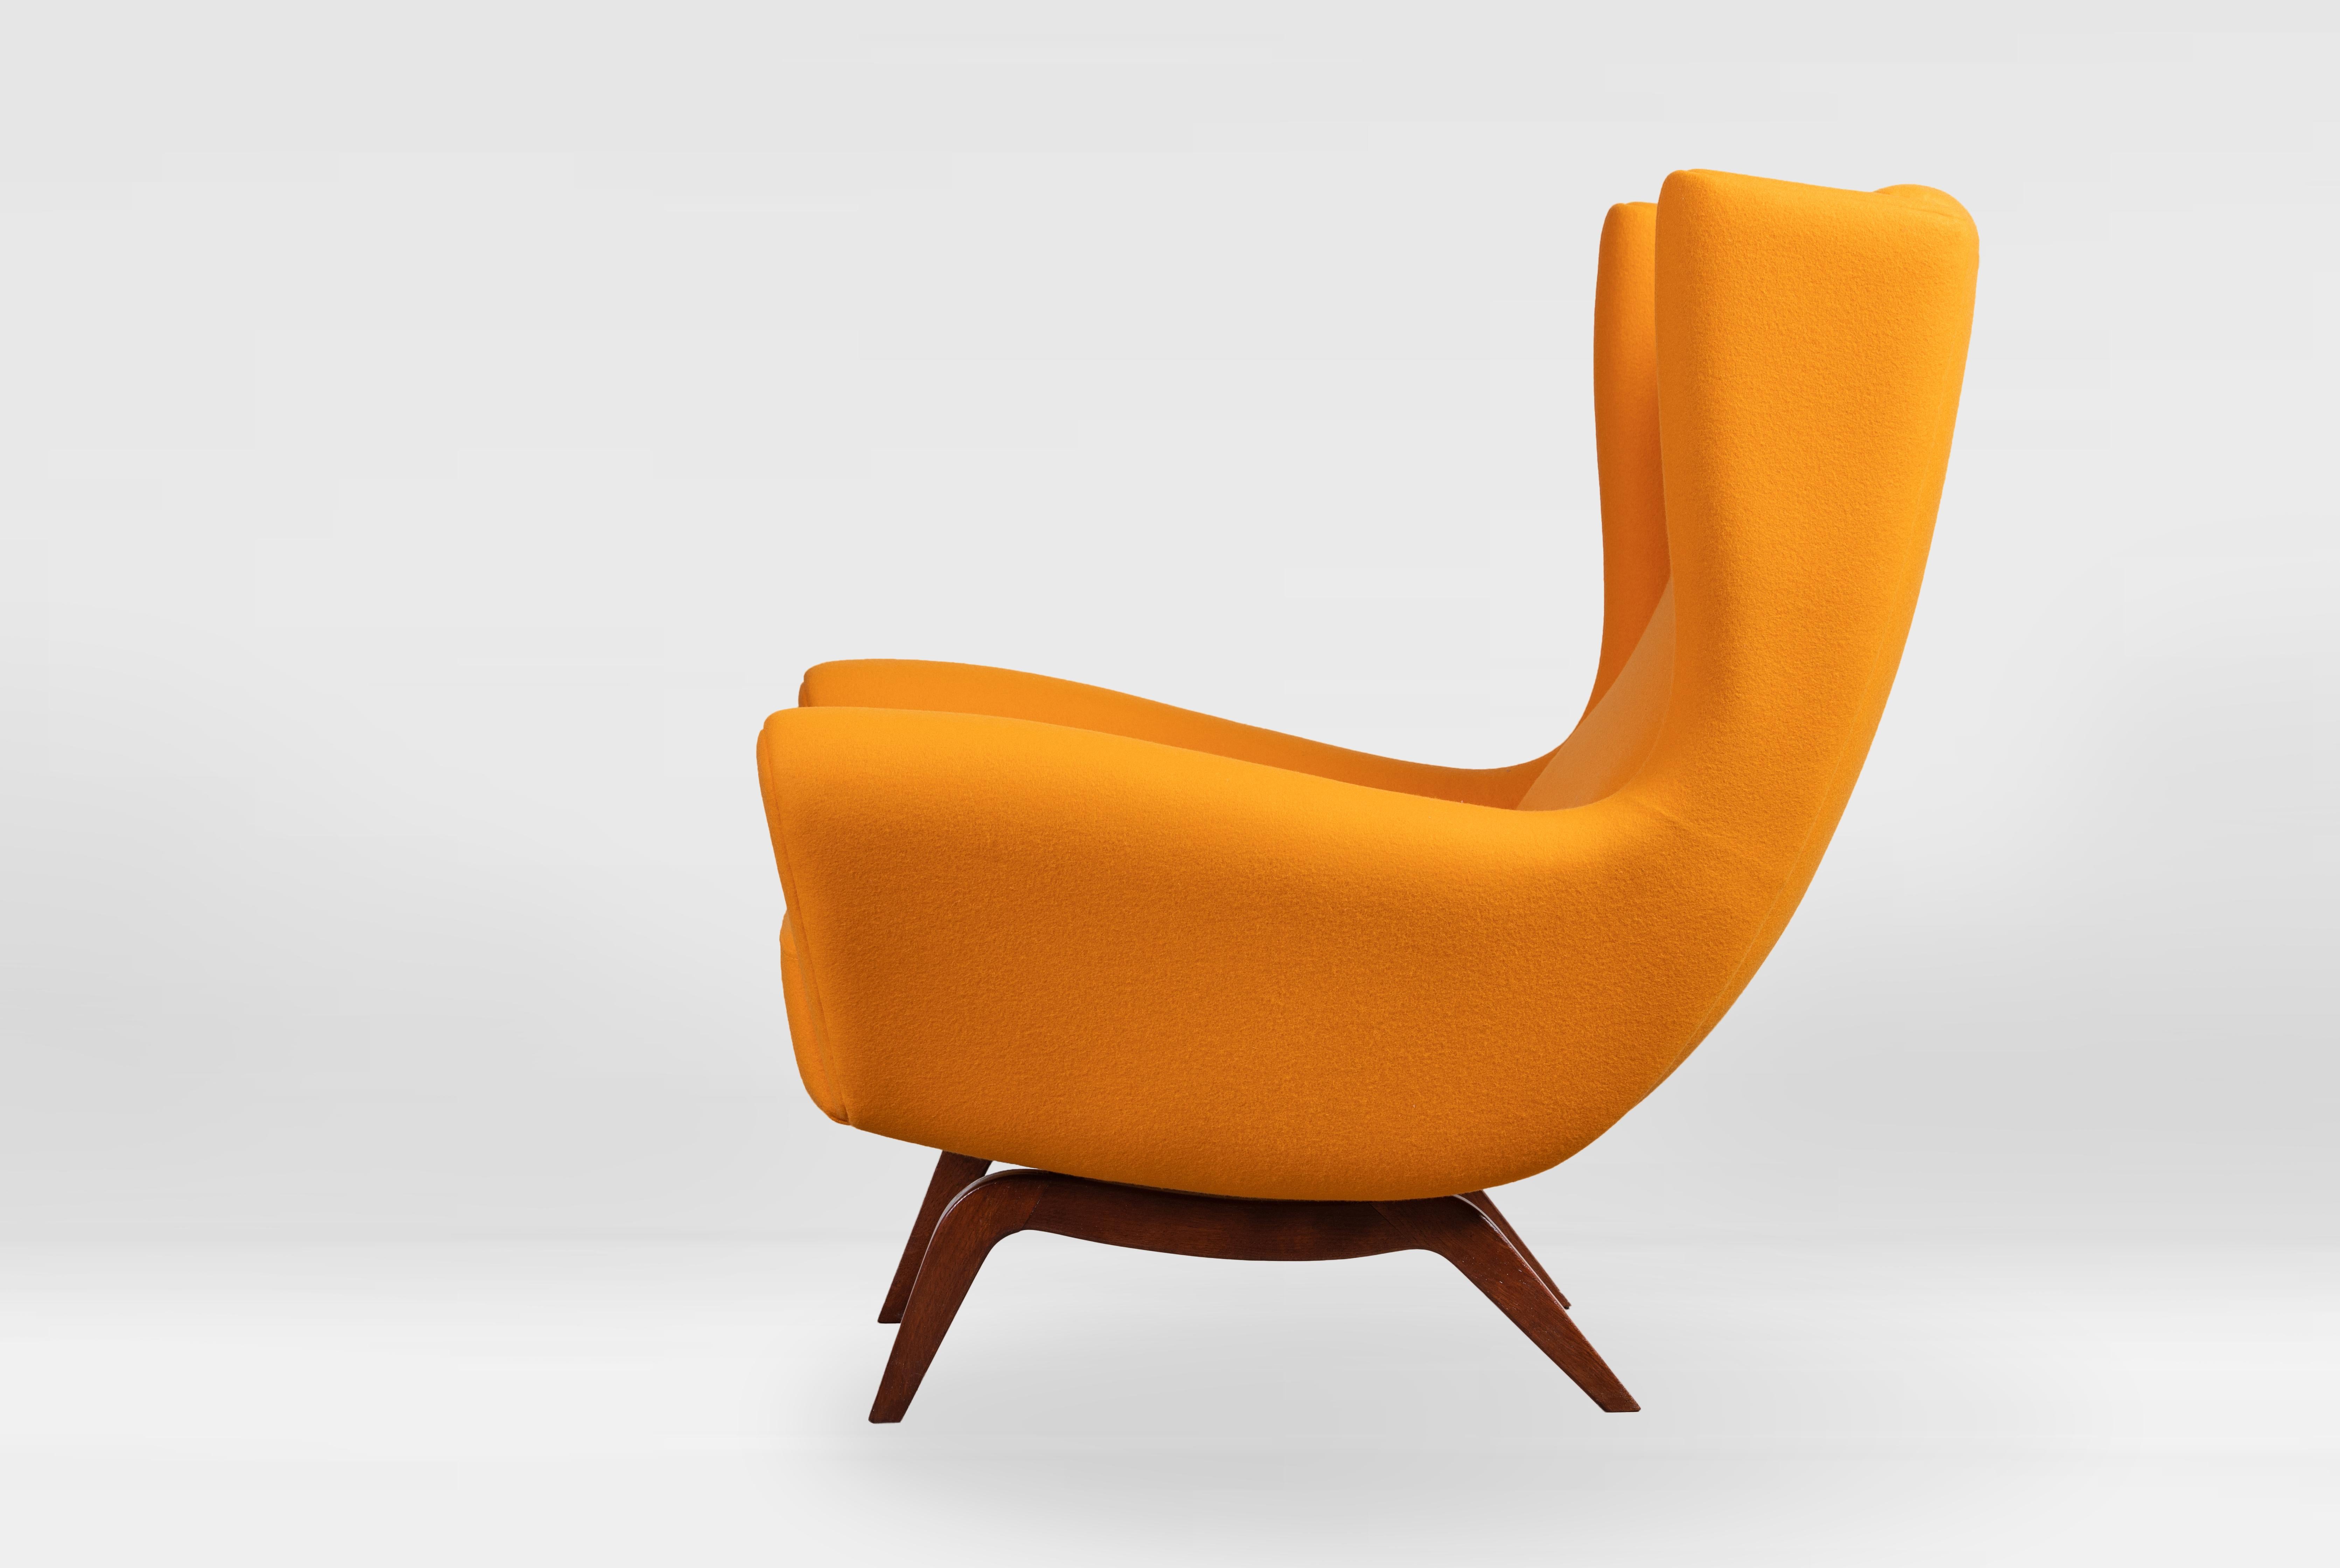 Illum Wikkelsø for Søren Willadsen, wingback chair 'Model 110', teak completely renovated and reupholstered in Dominique Kieffer orange wool.